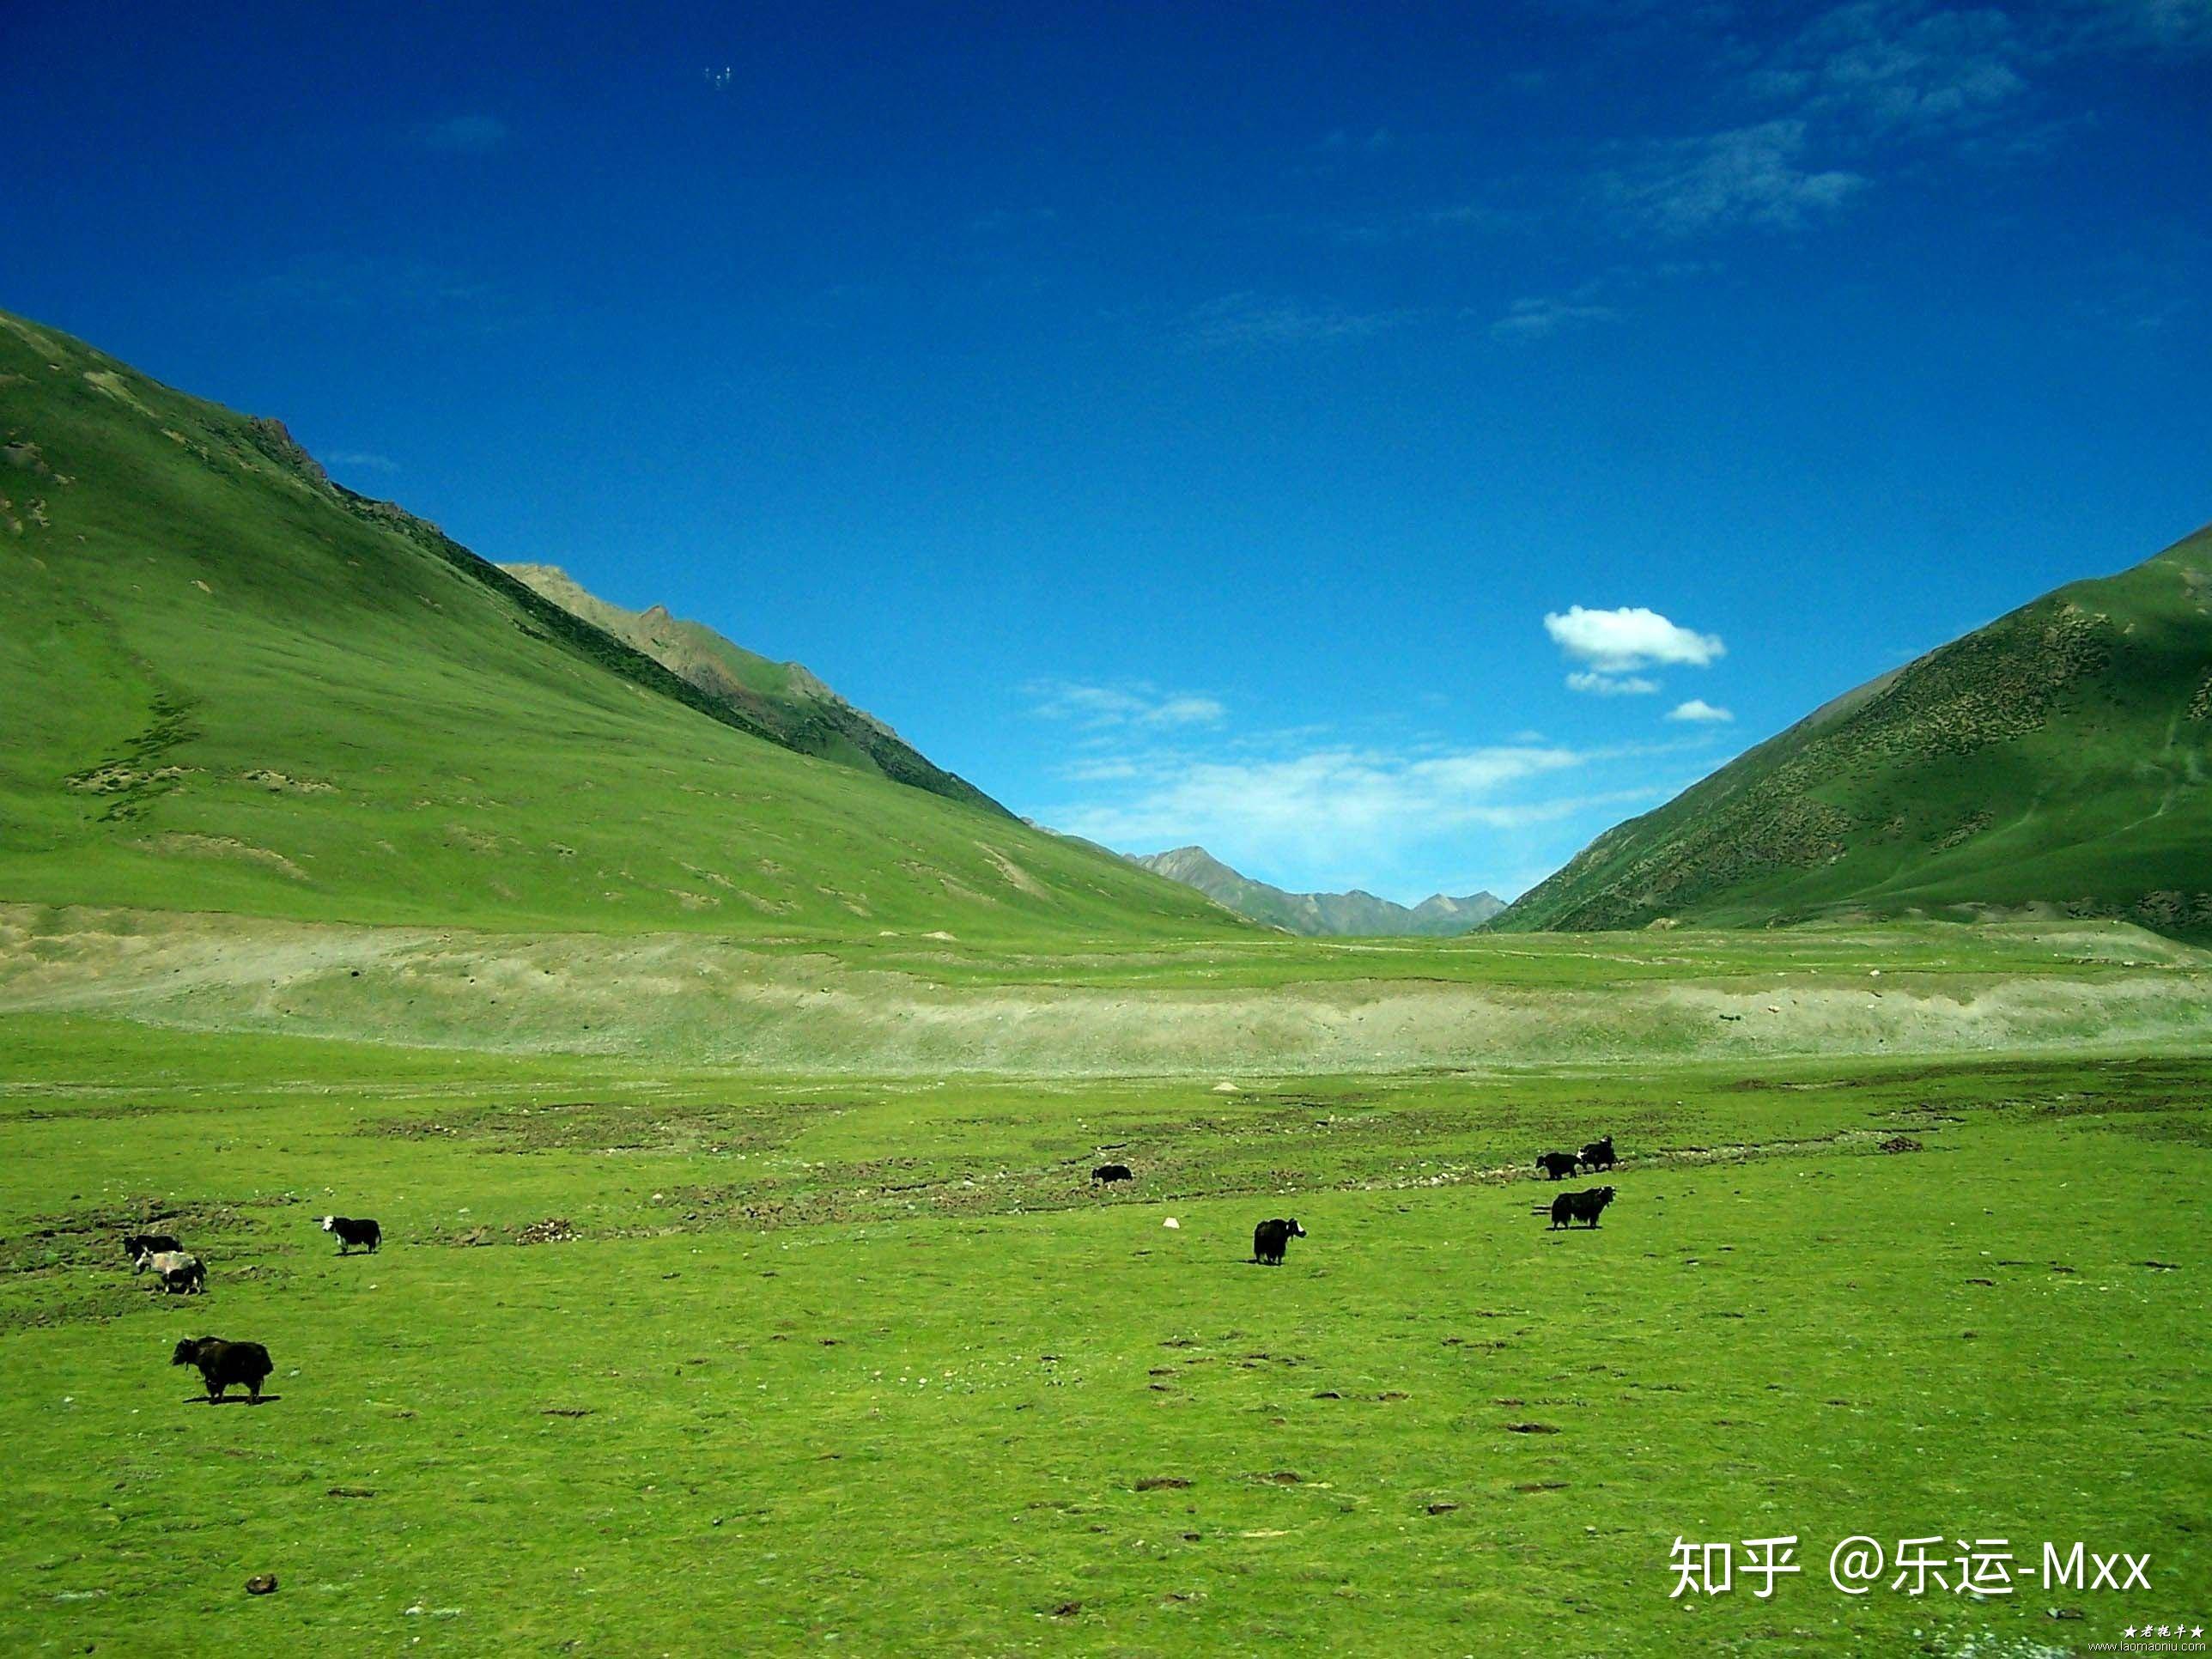 藏北草原风吹草低见牛羊